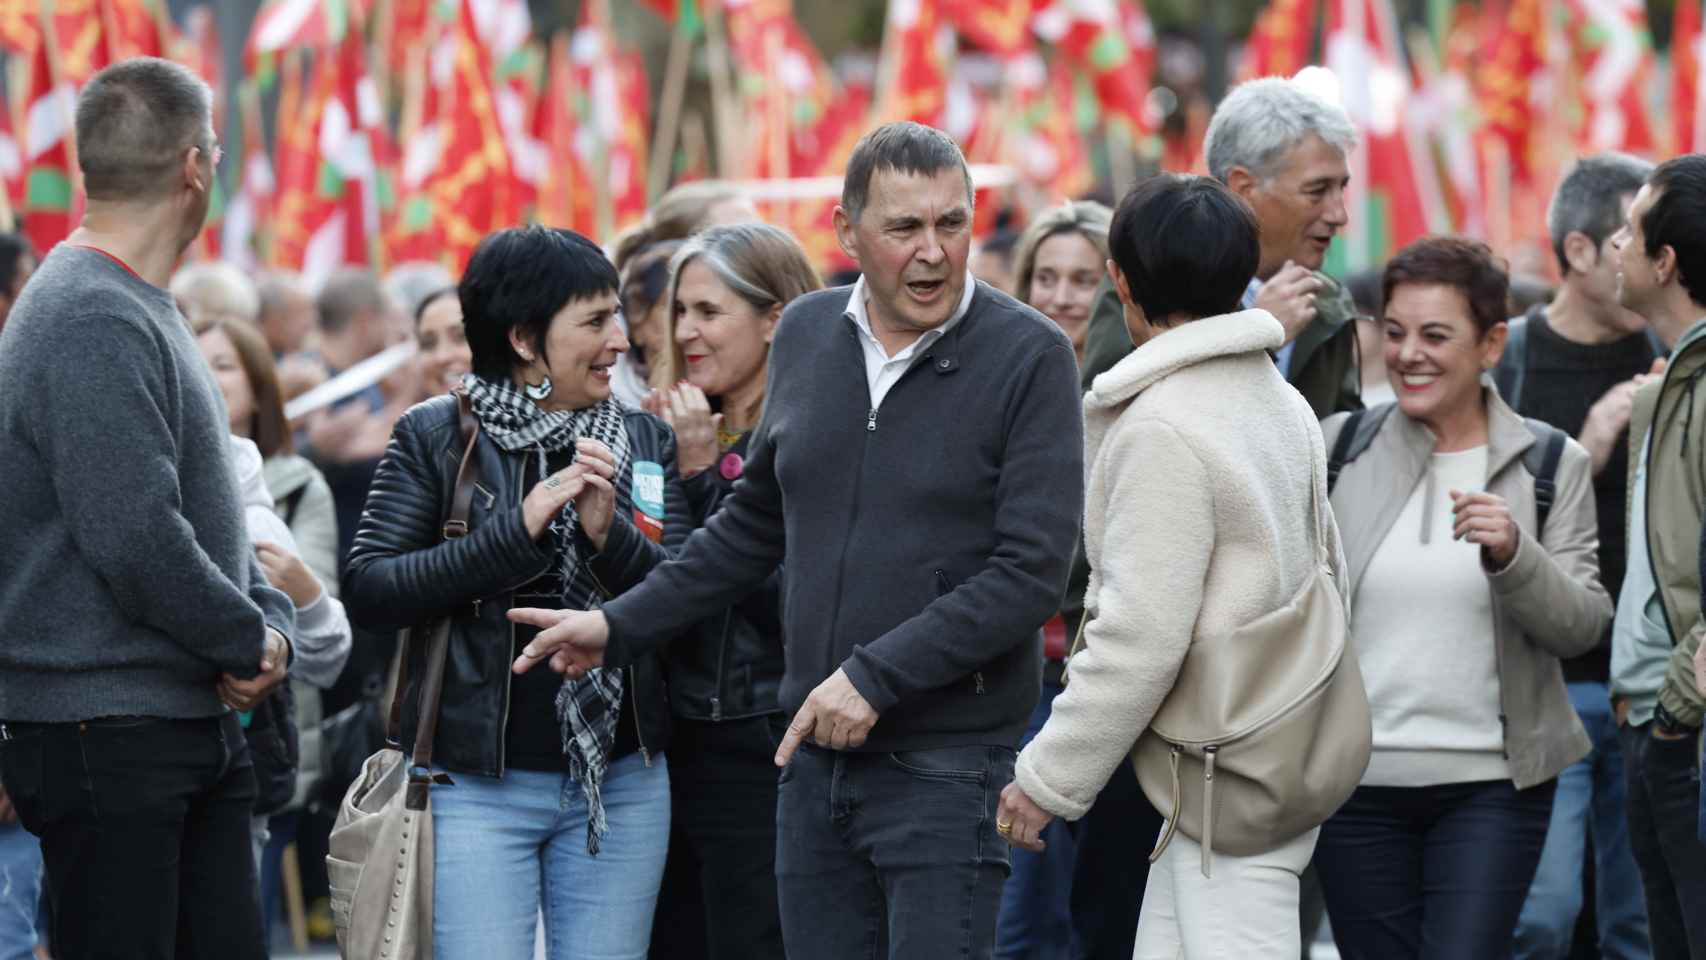 El coordinador general de EH-Bildu, Arnaldo Otegi, junto a otros cargos del partido durante una reciente marcha en Bilbao / Miguel Toña - EFE